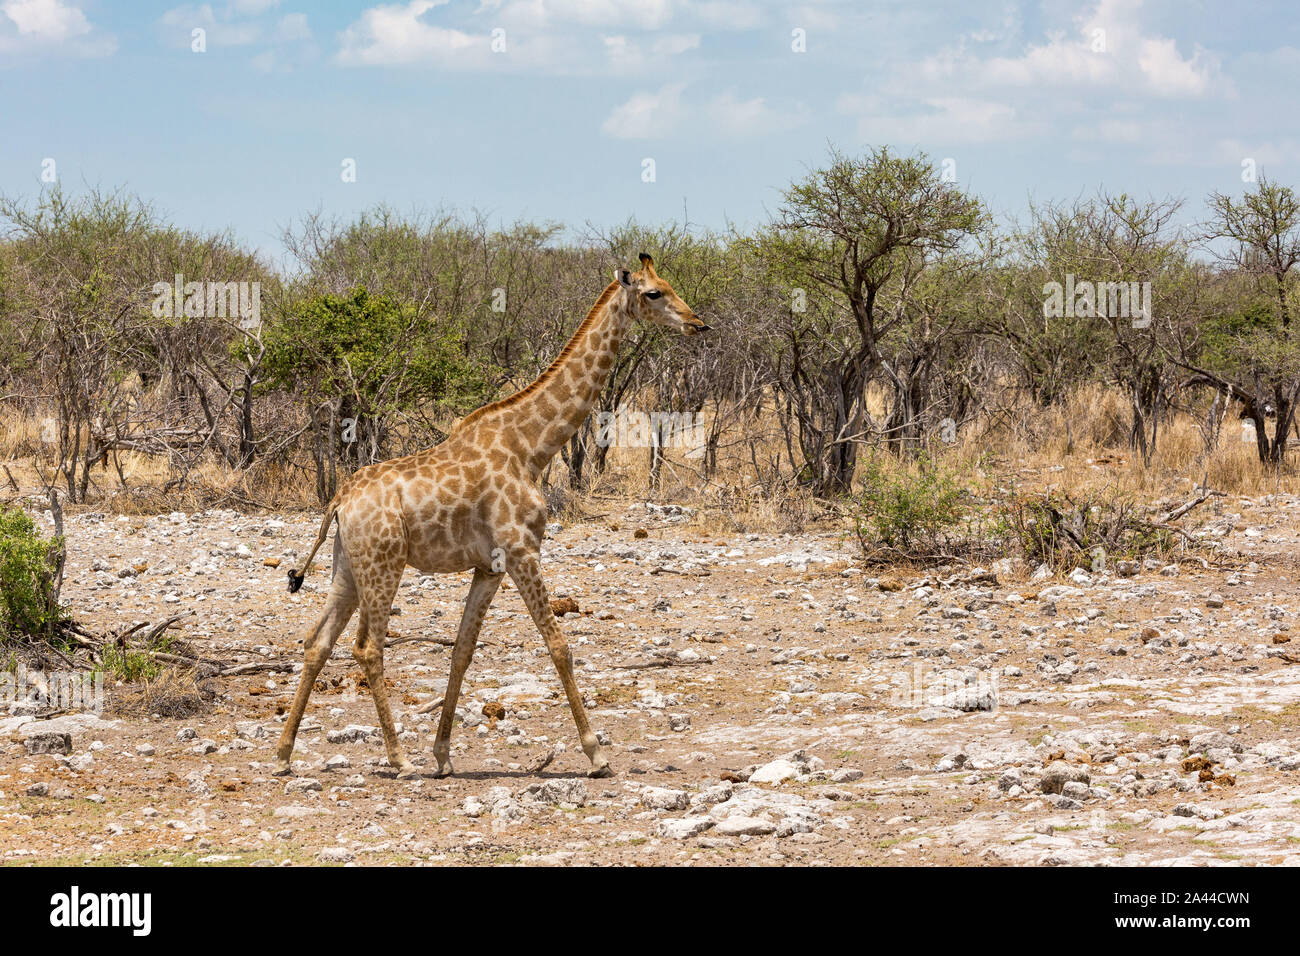 Une girafe marche à travers la steppe, Etosha, Namibie, Afrique Banque D'Images